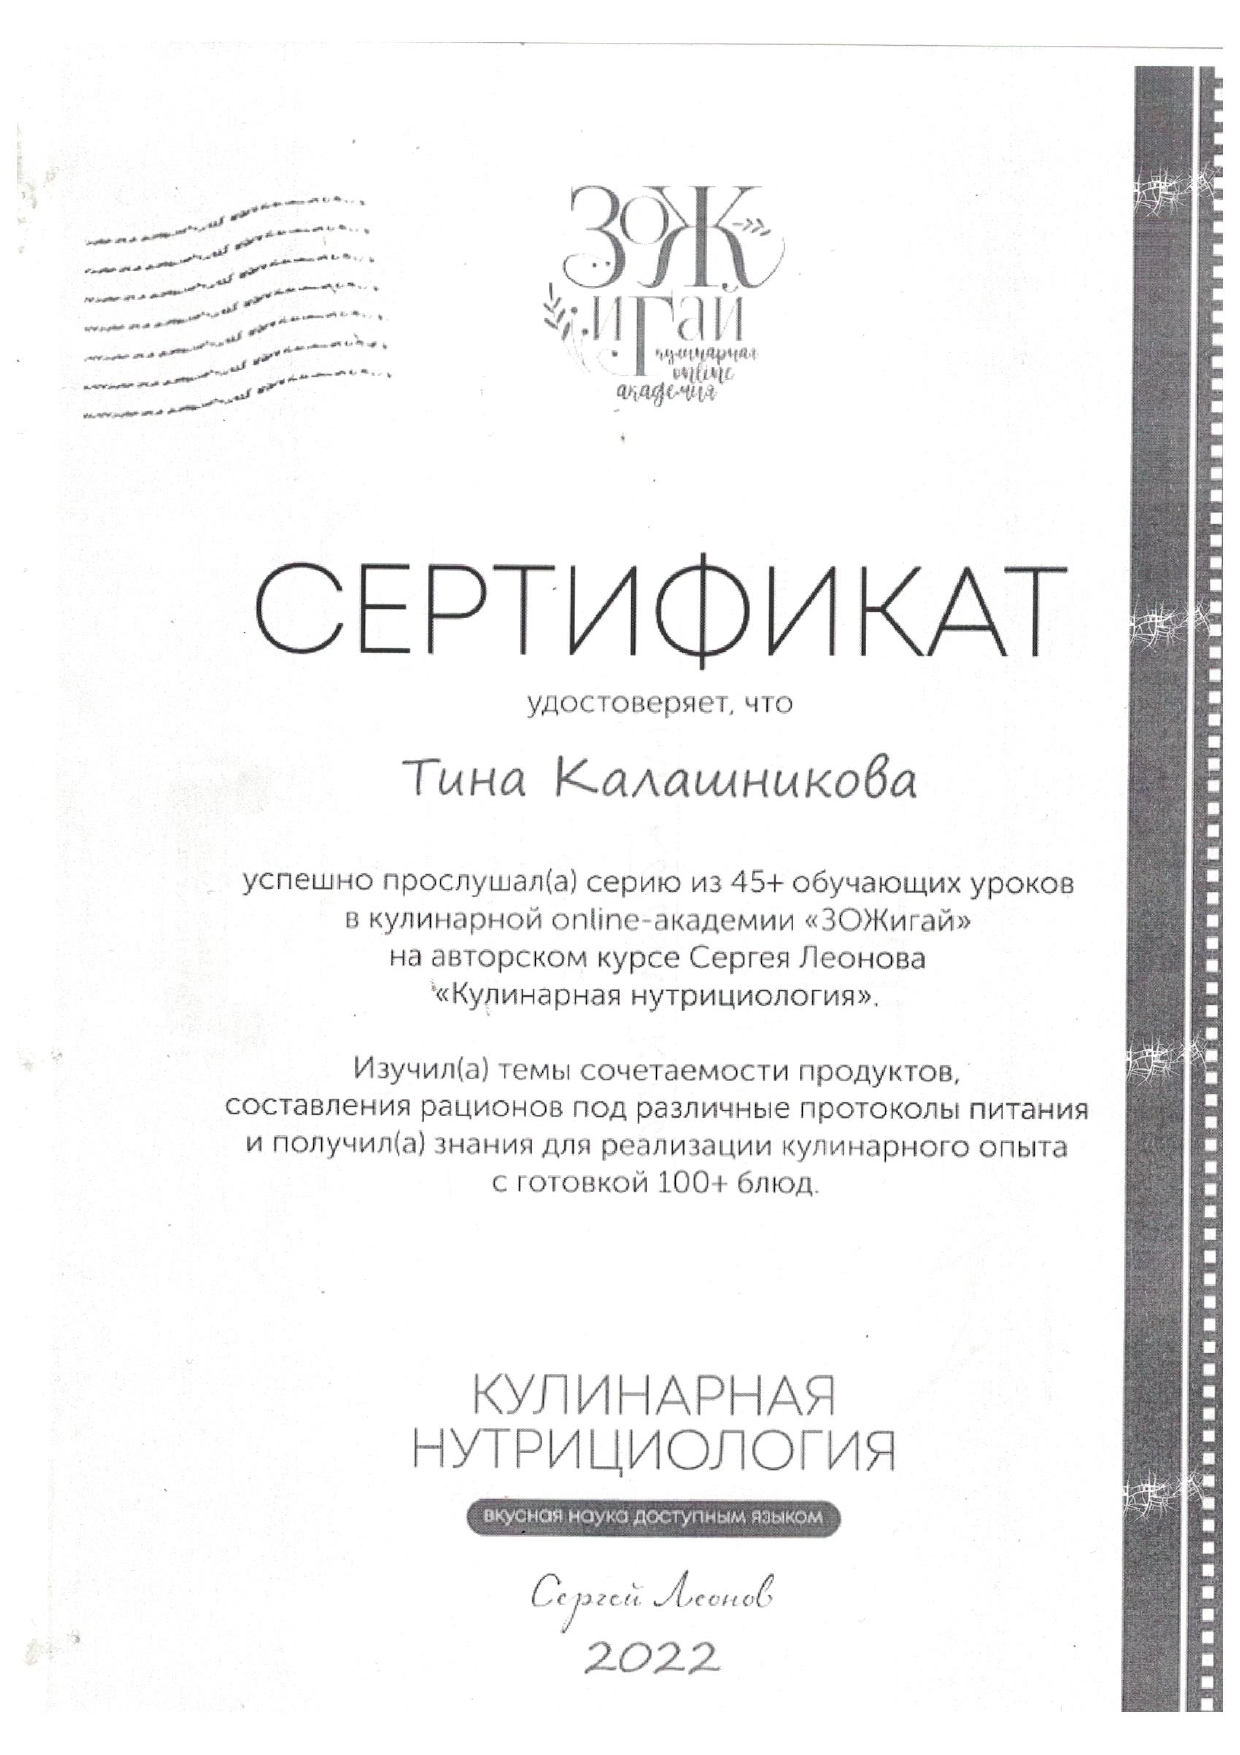 Скан сертификат кулинарная нутрициология, Калашникова Т. А.